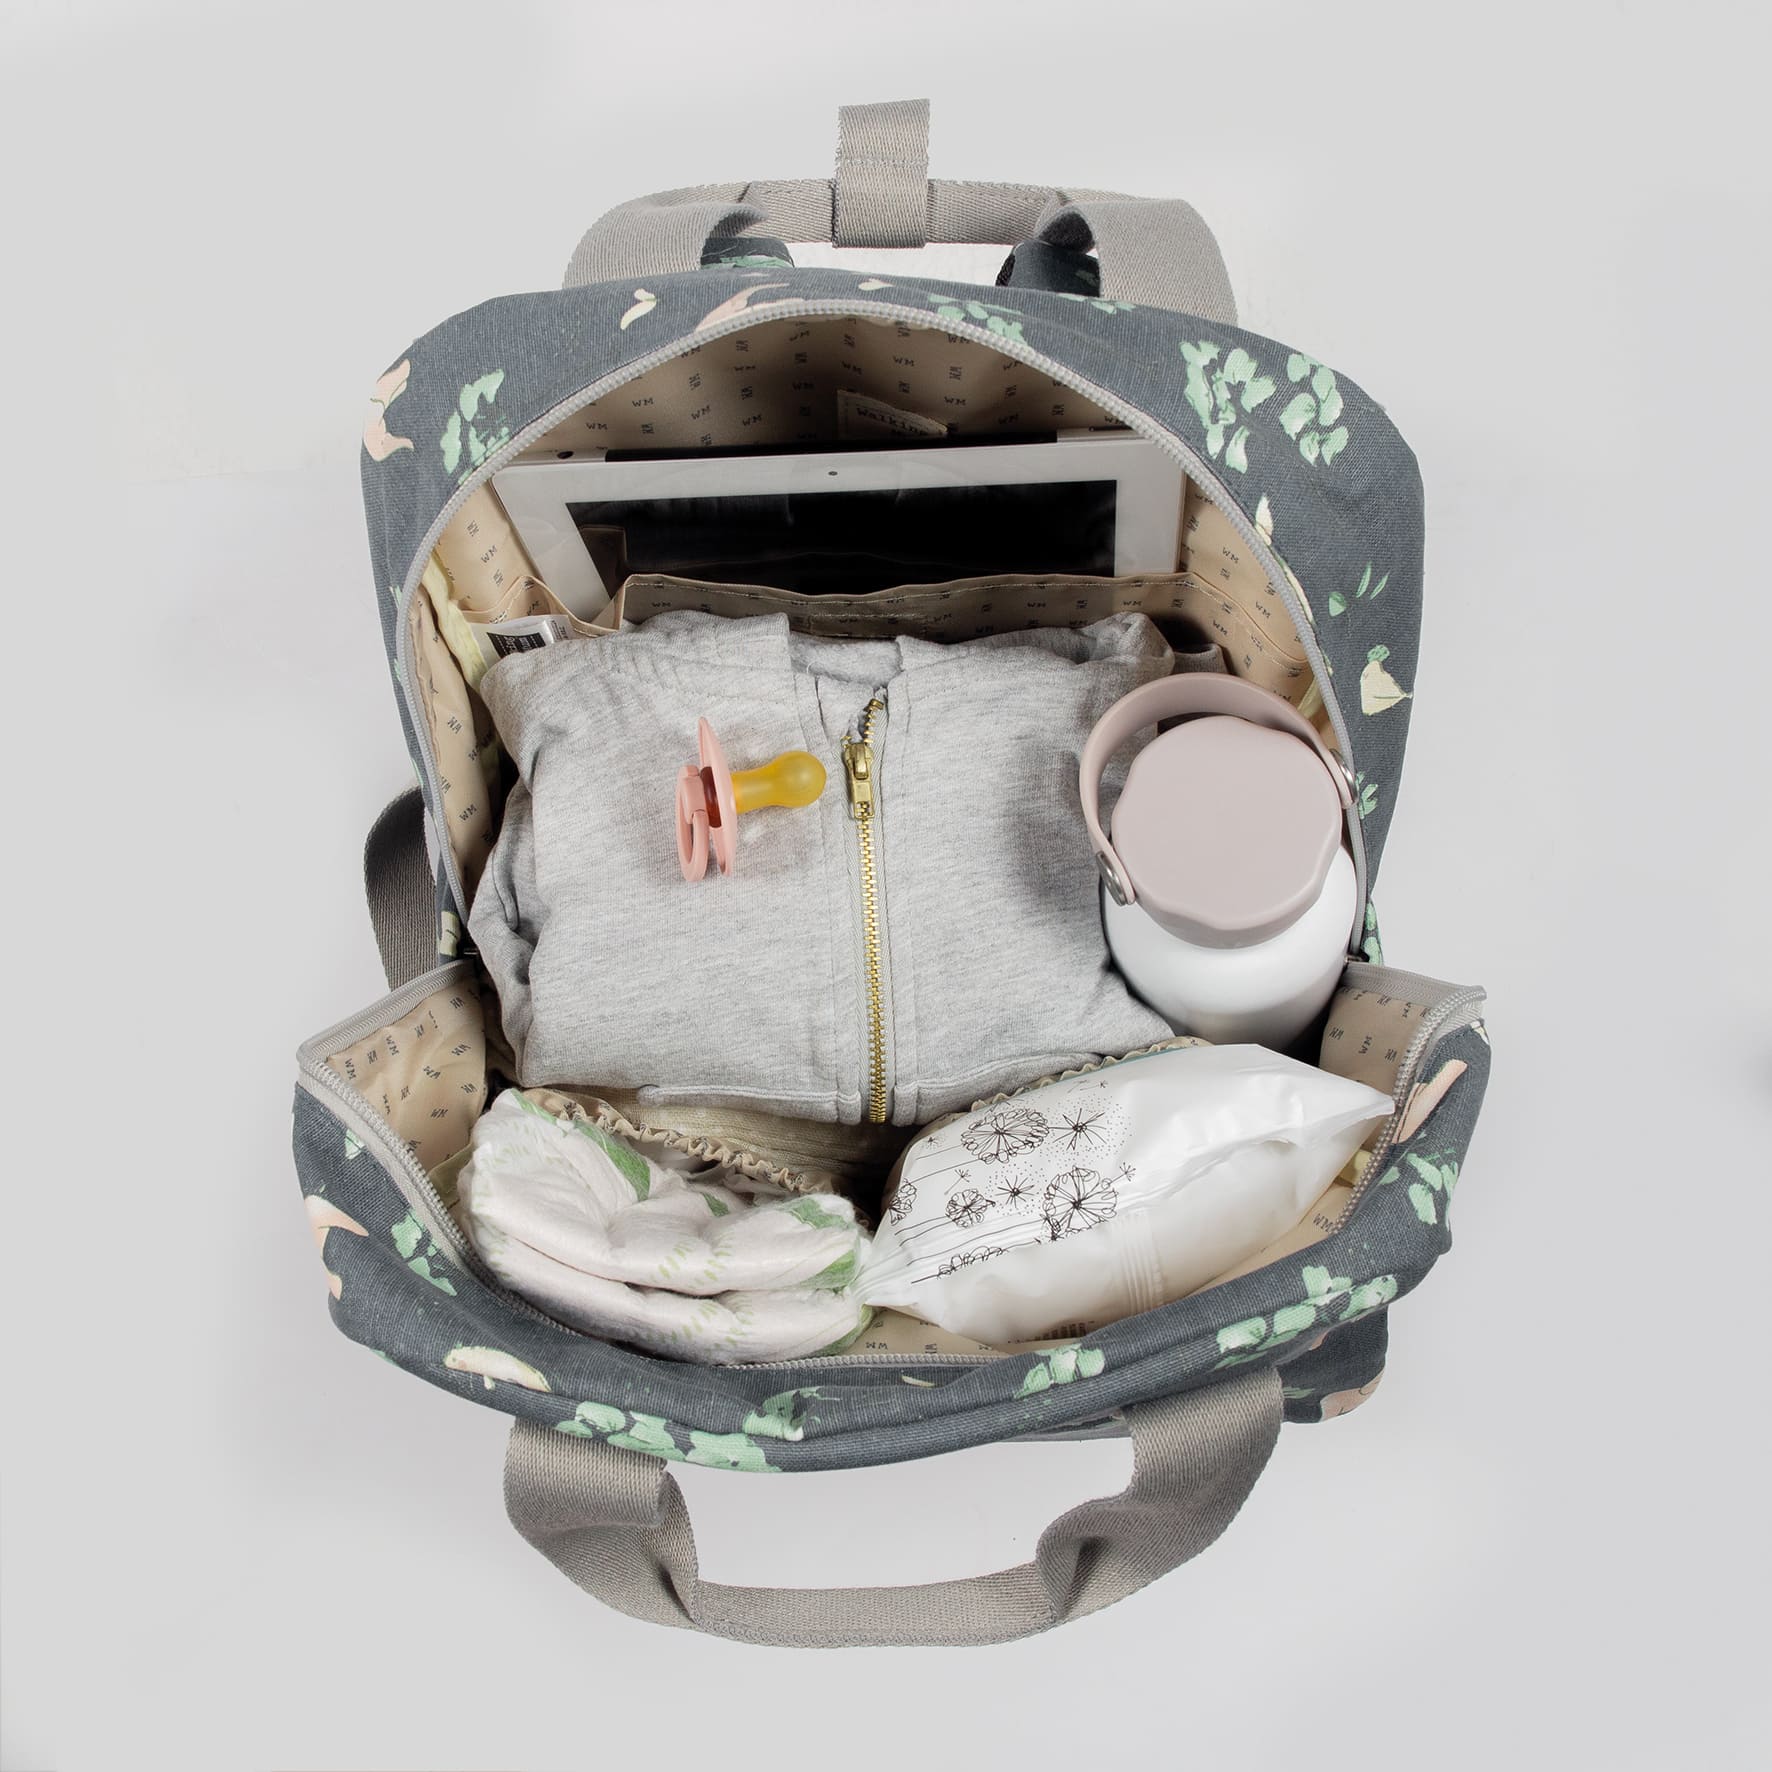 Comprar Bolso mochila para silla Baby Nature Ocean de Walking Mum online,  El Rincón de mi Bebé